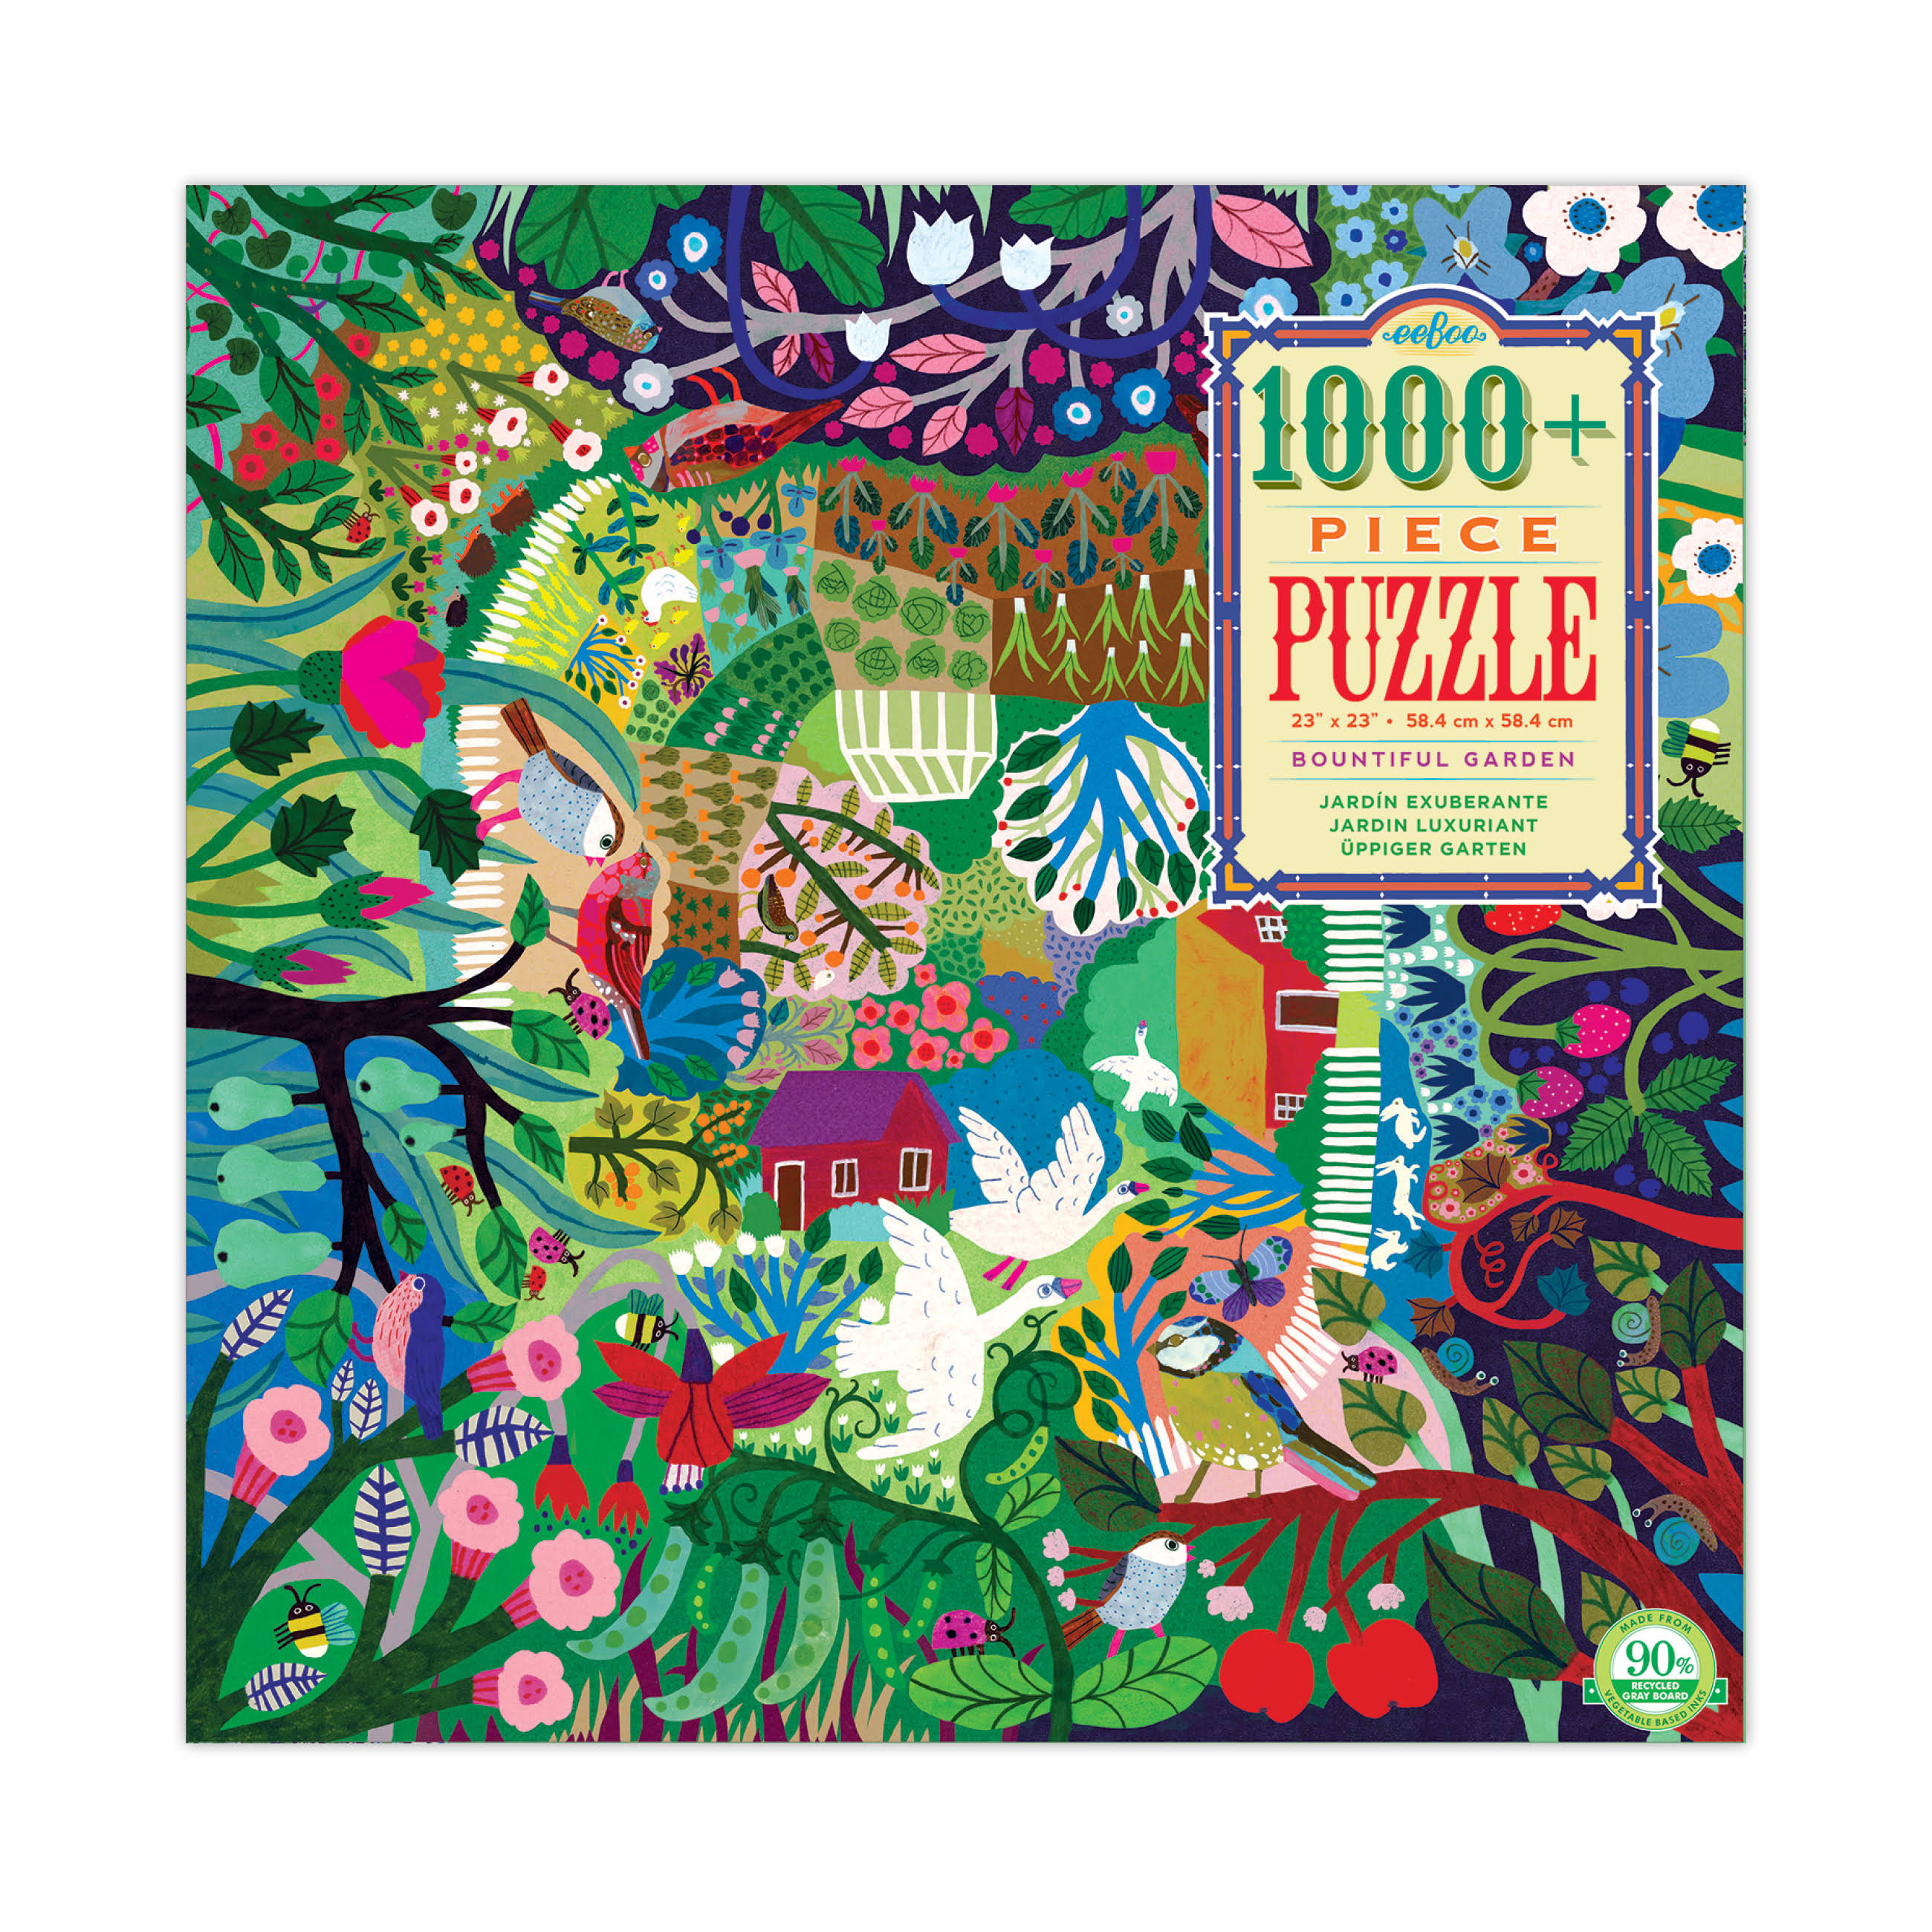 Eeboo, Bountiful Garden 1000 Piece Puzzle